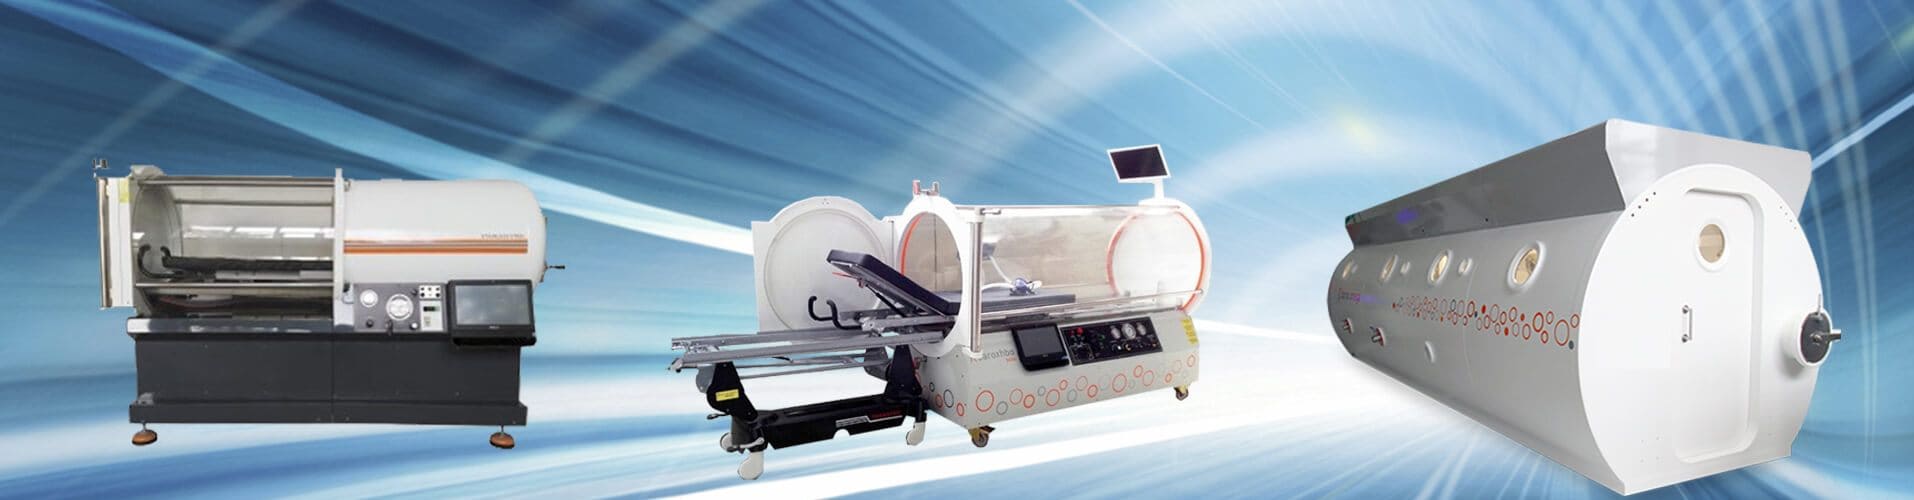 Hyperbaric Chambers - Airox technologies